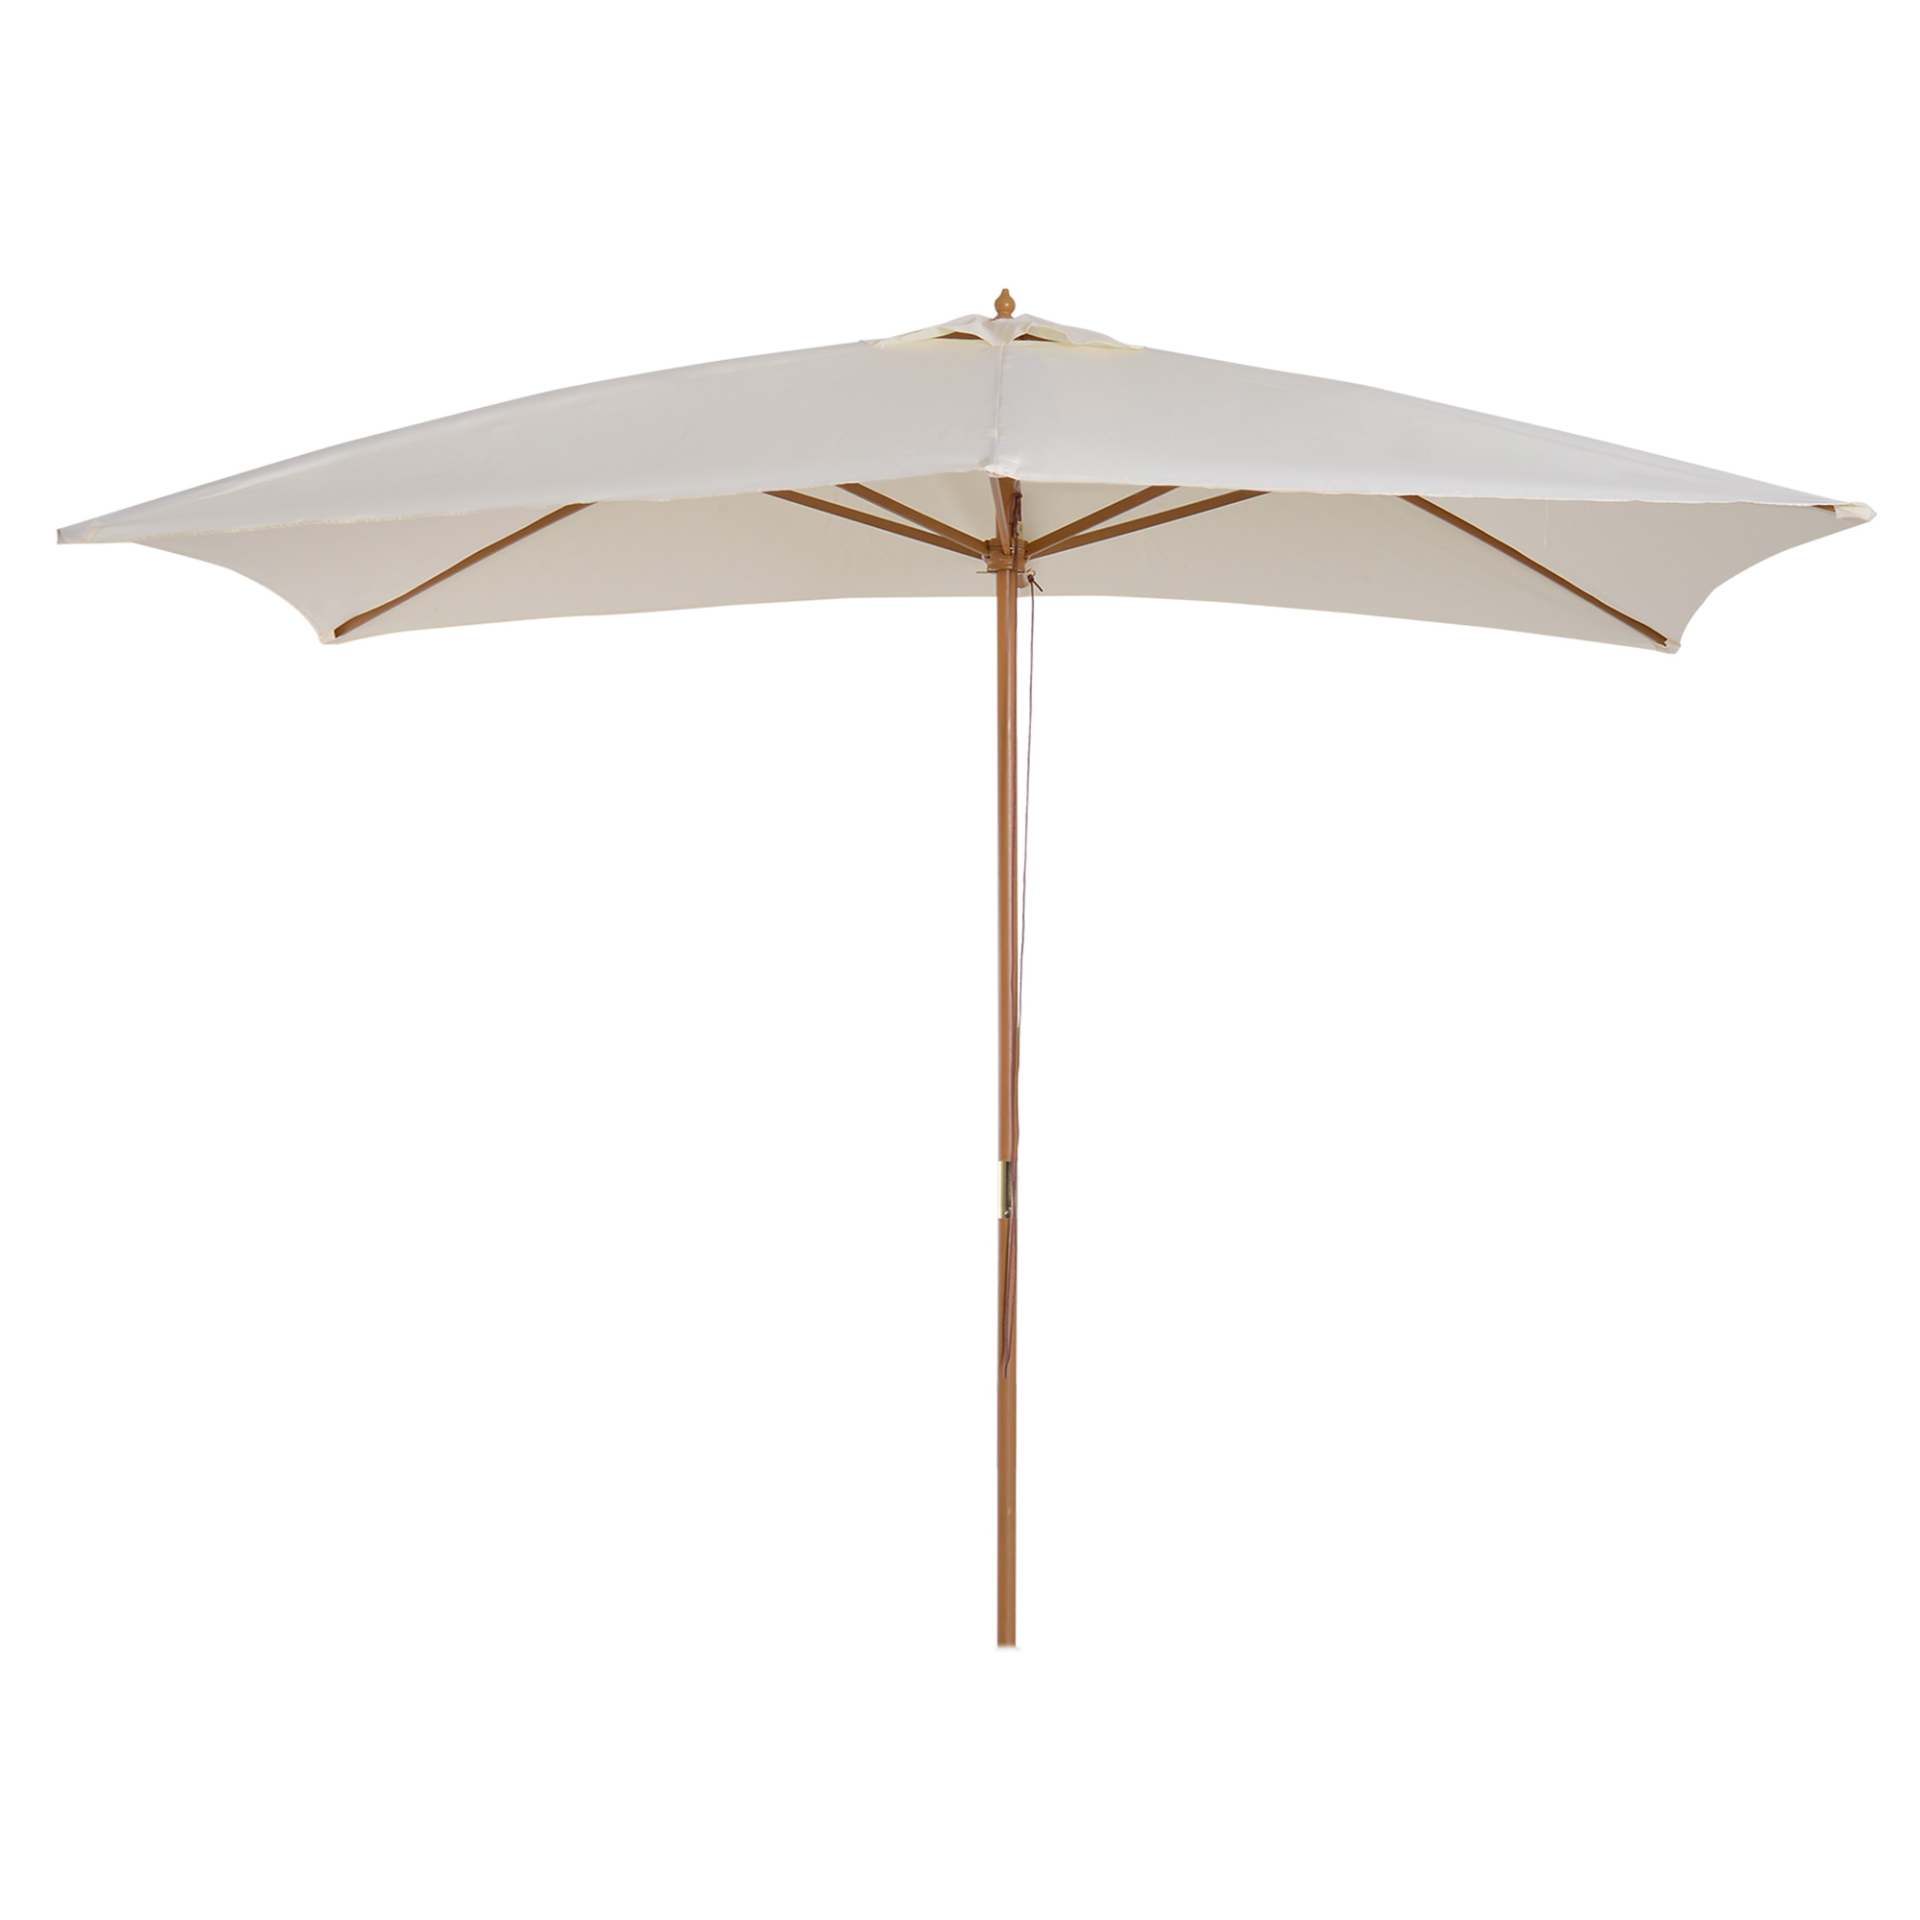 Outsunny 2 x 3m Wooden Parasol Garden Umbrellas Sun Shade Patio Outdoor Umbrella Canopy Cream